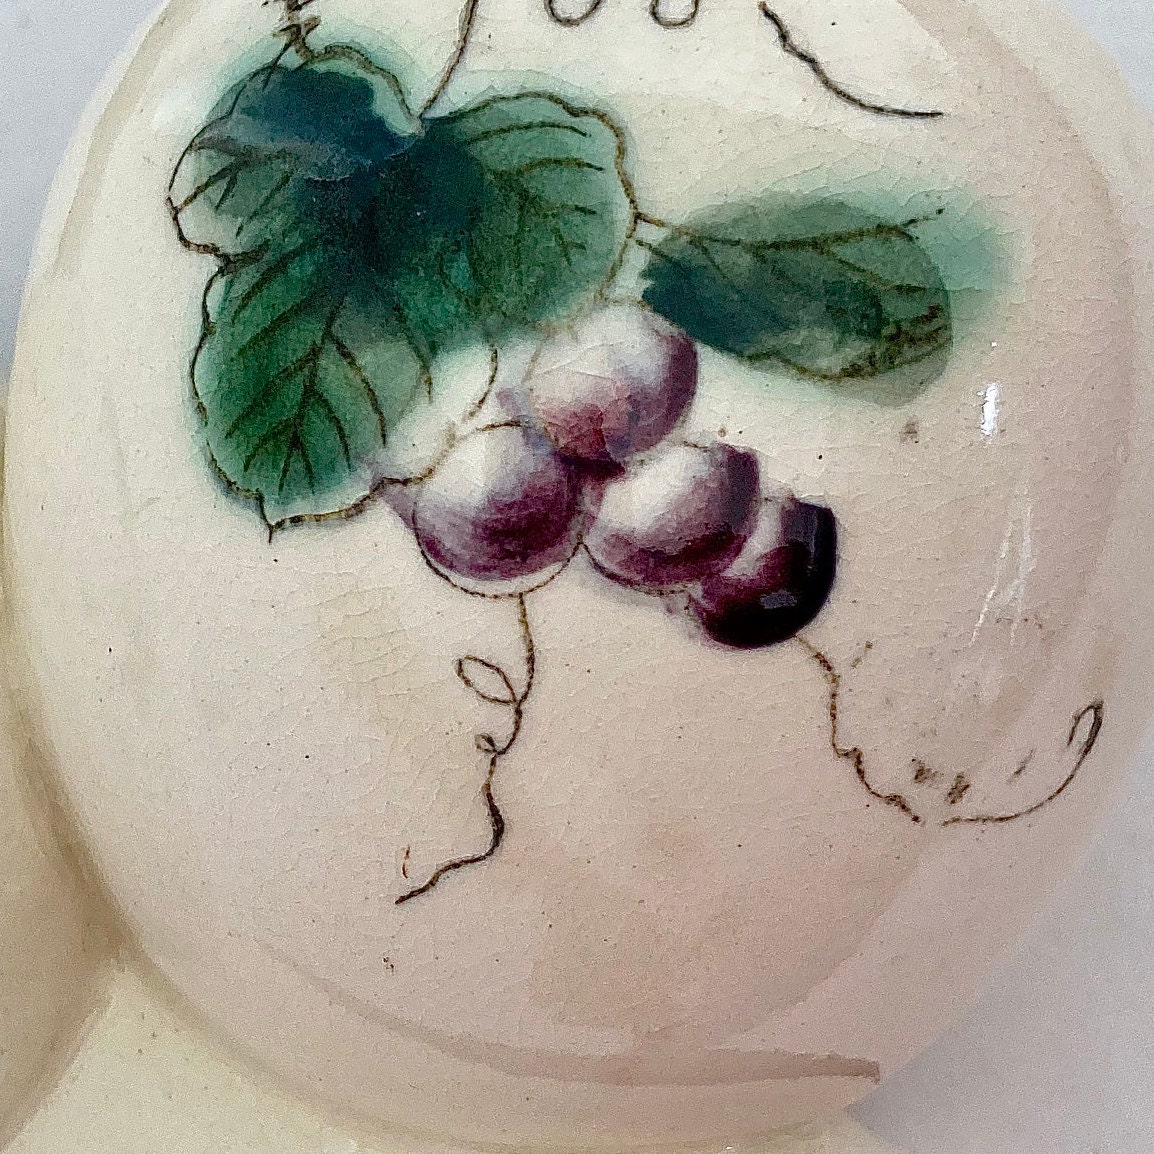 Juego de Aceitera-Vinagrera de Porcelana Vintage (Ref. 069)  Cerámica  artesanal, Manualidades de cerámica, Vajilla de cerámica